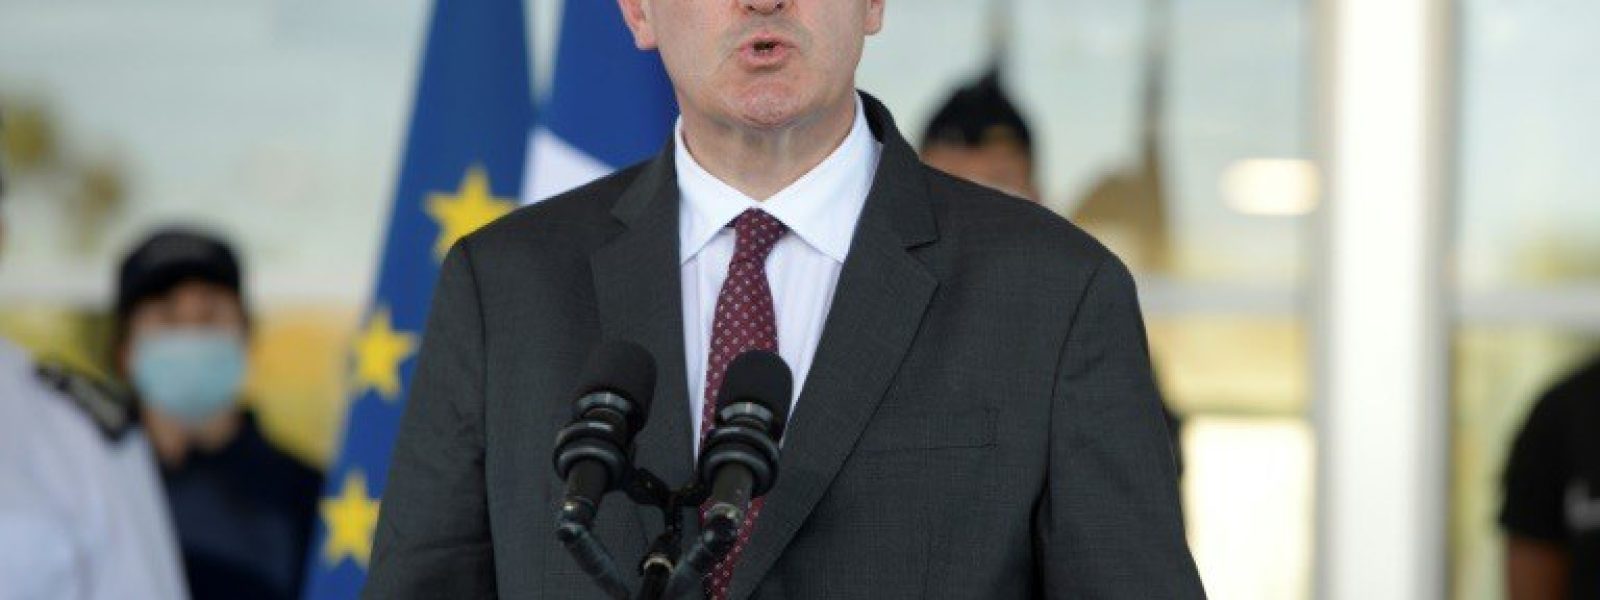 Le Premier ministre Jean Castex à Nice le 25 juillet 2020 AFP